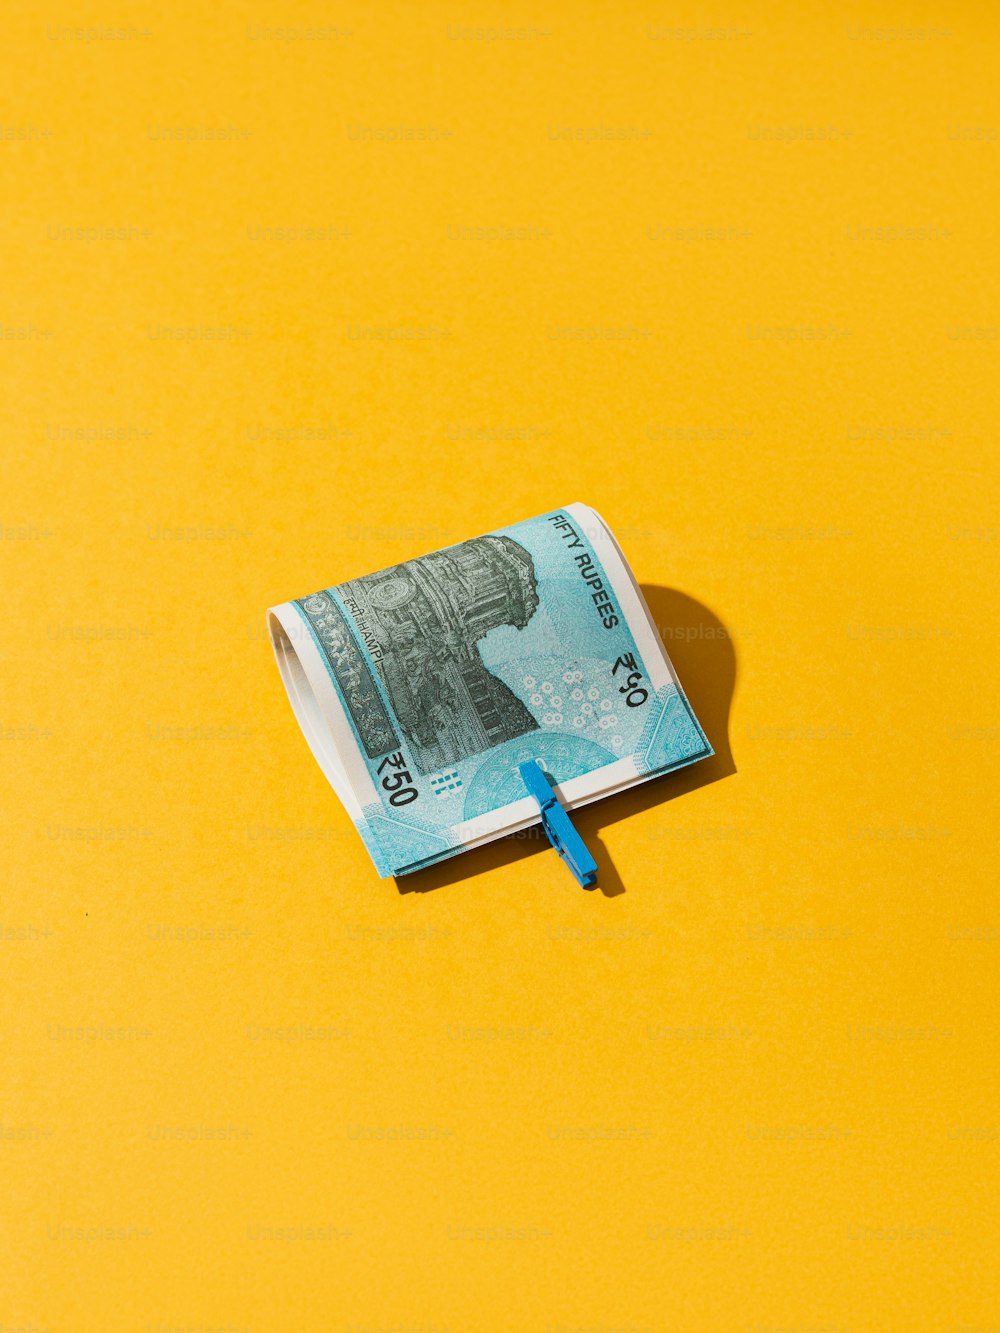 Una banconota da cento dollari arrotolata che giace su una superficie gialla